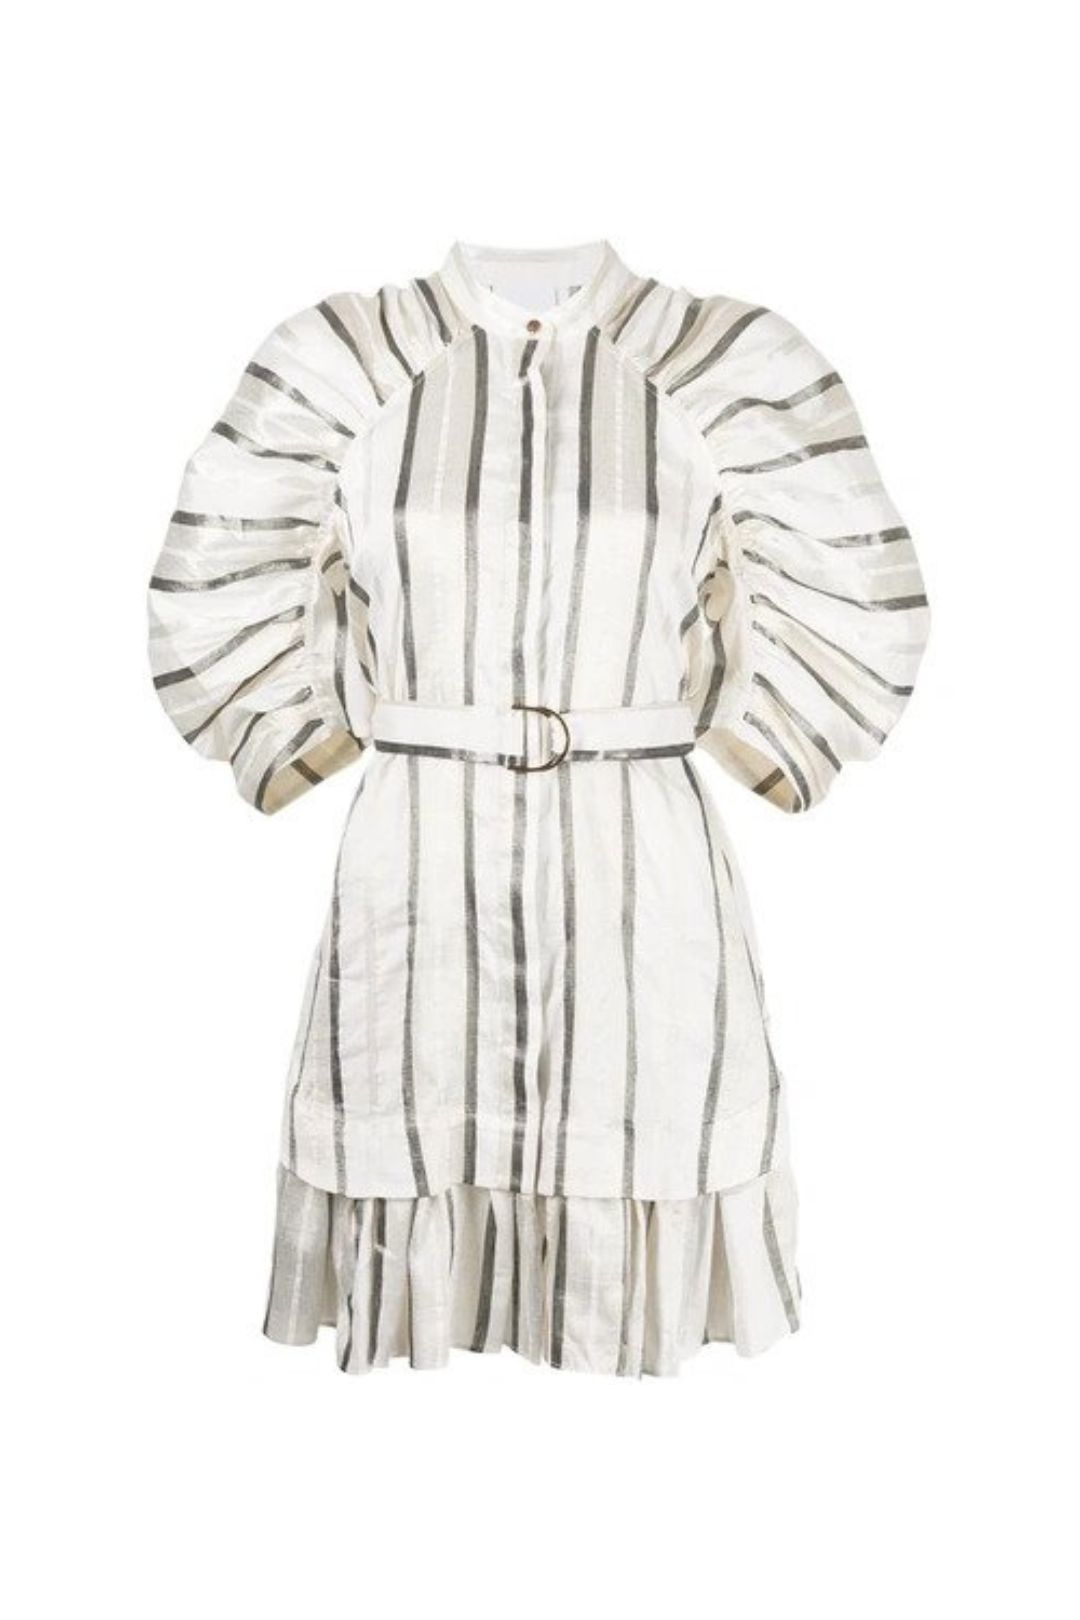 Acler Leighton Dress mini